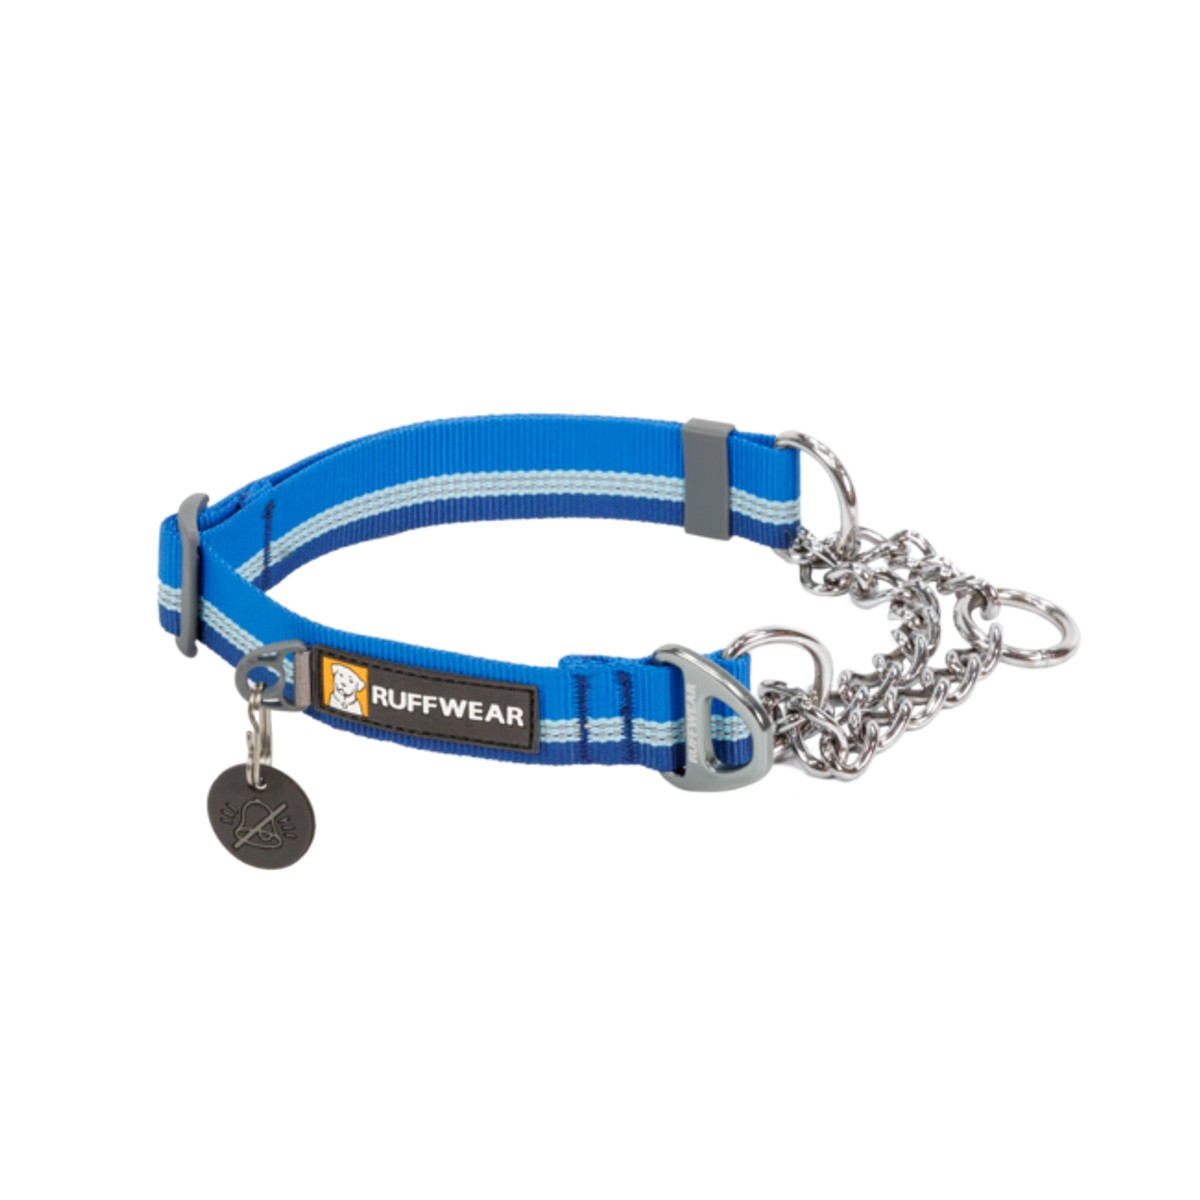 RuffWear Chain Reaction Dog Collar - Blue Pool